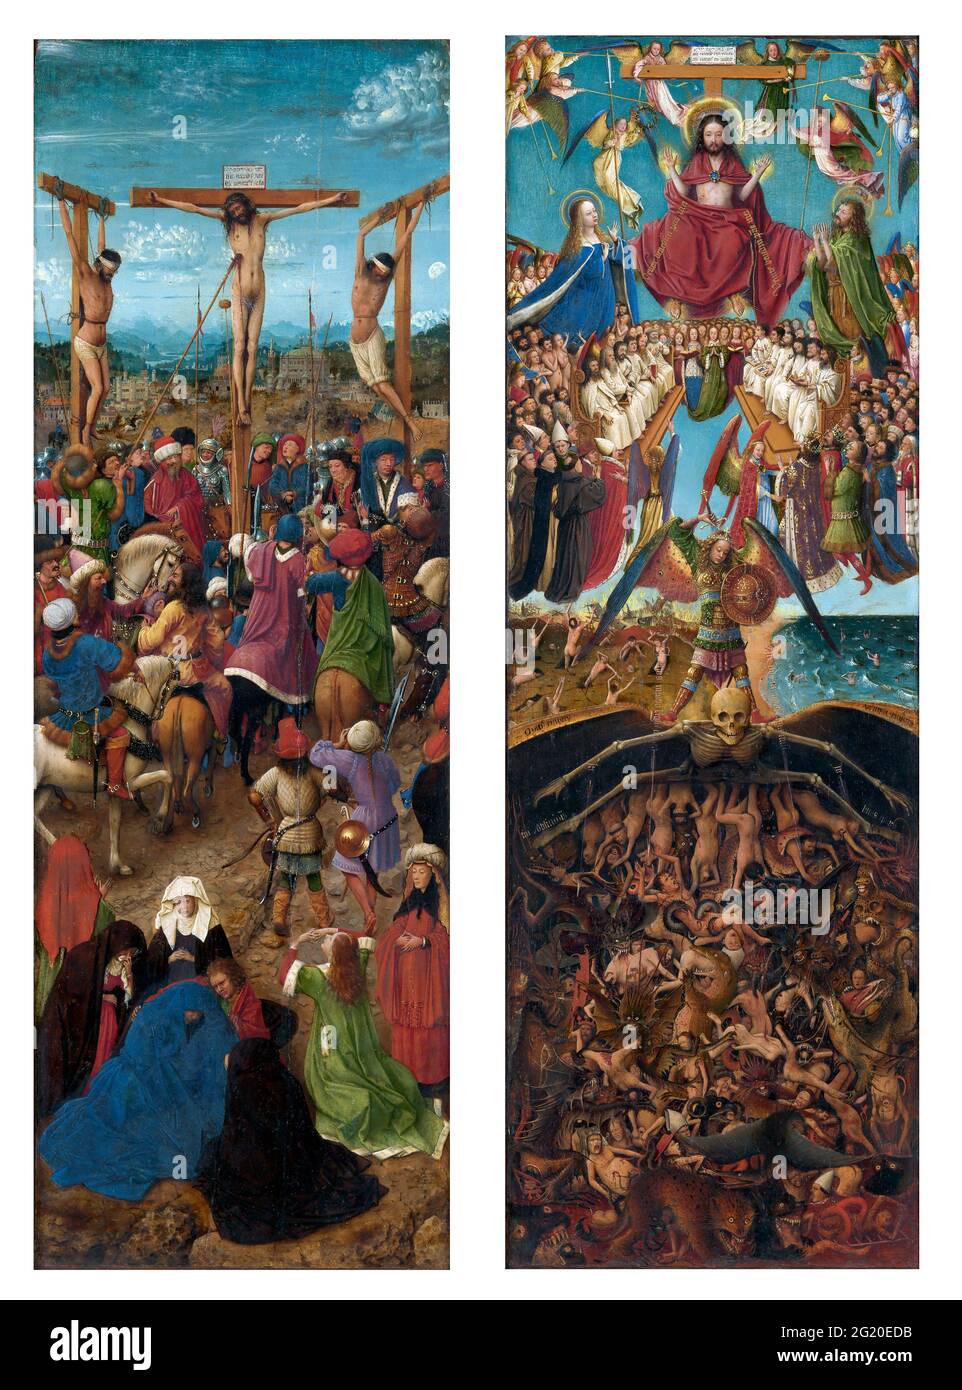 La Crucifixion et le dernier jugement diptych de Jan van Eyck (c.1390-1441), huile sur toile, transférée du bois, c. 1440-41 Banque D'Images